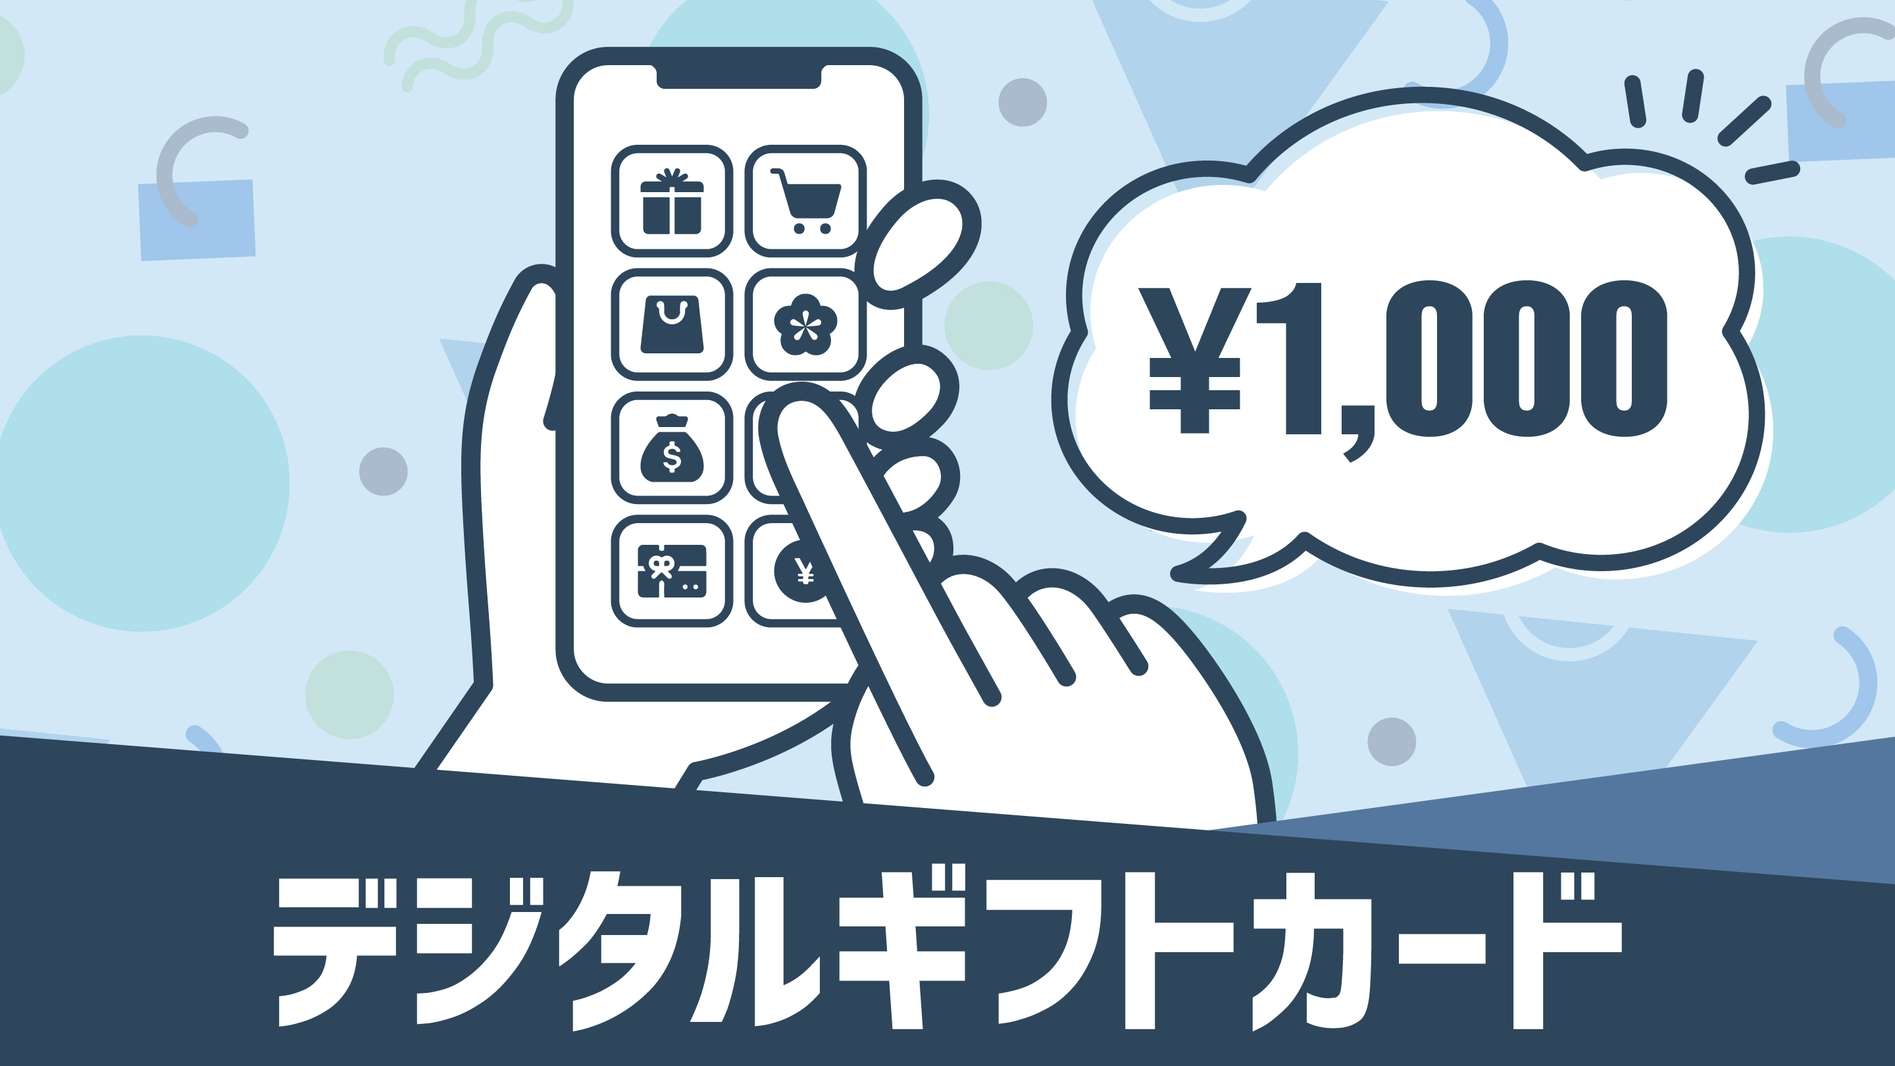 ☆デジタルギフト券マルチギフトカード1000円付プラン☆